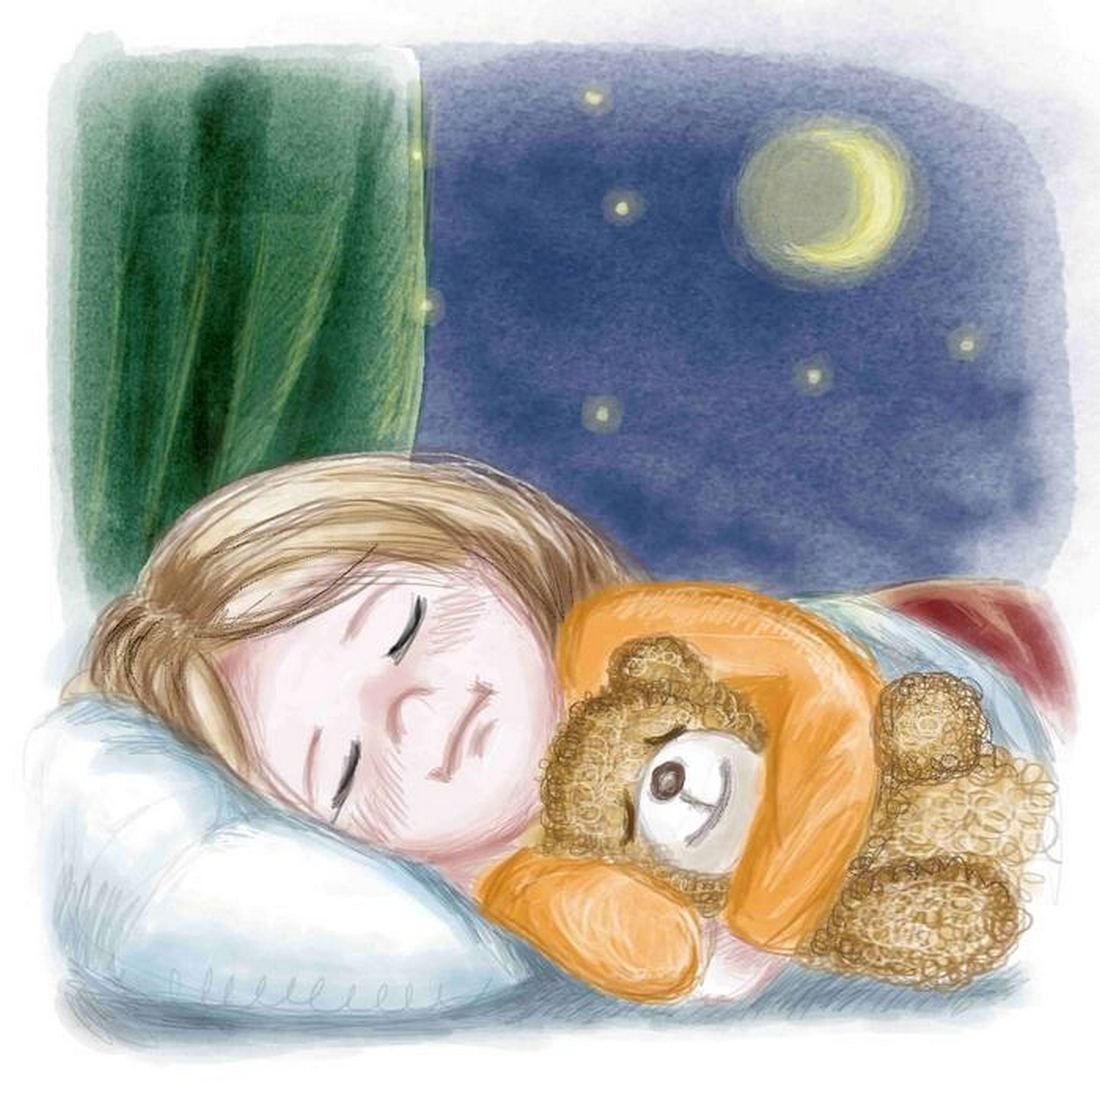 Мама уснула а ее. Детская иллюстрация. Спокойного сна. Детский сон рисунок.